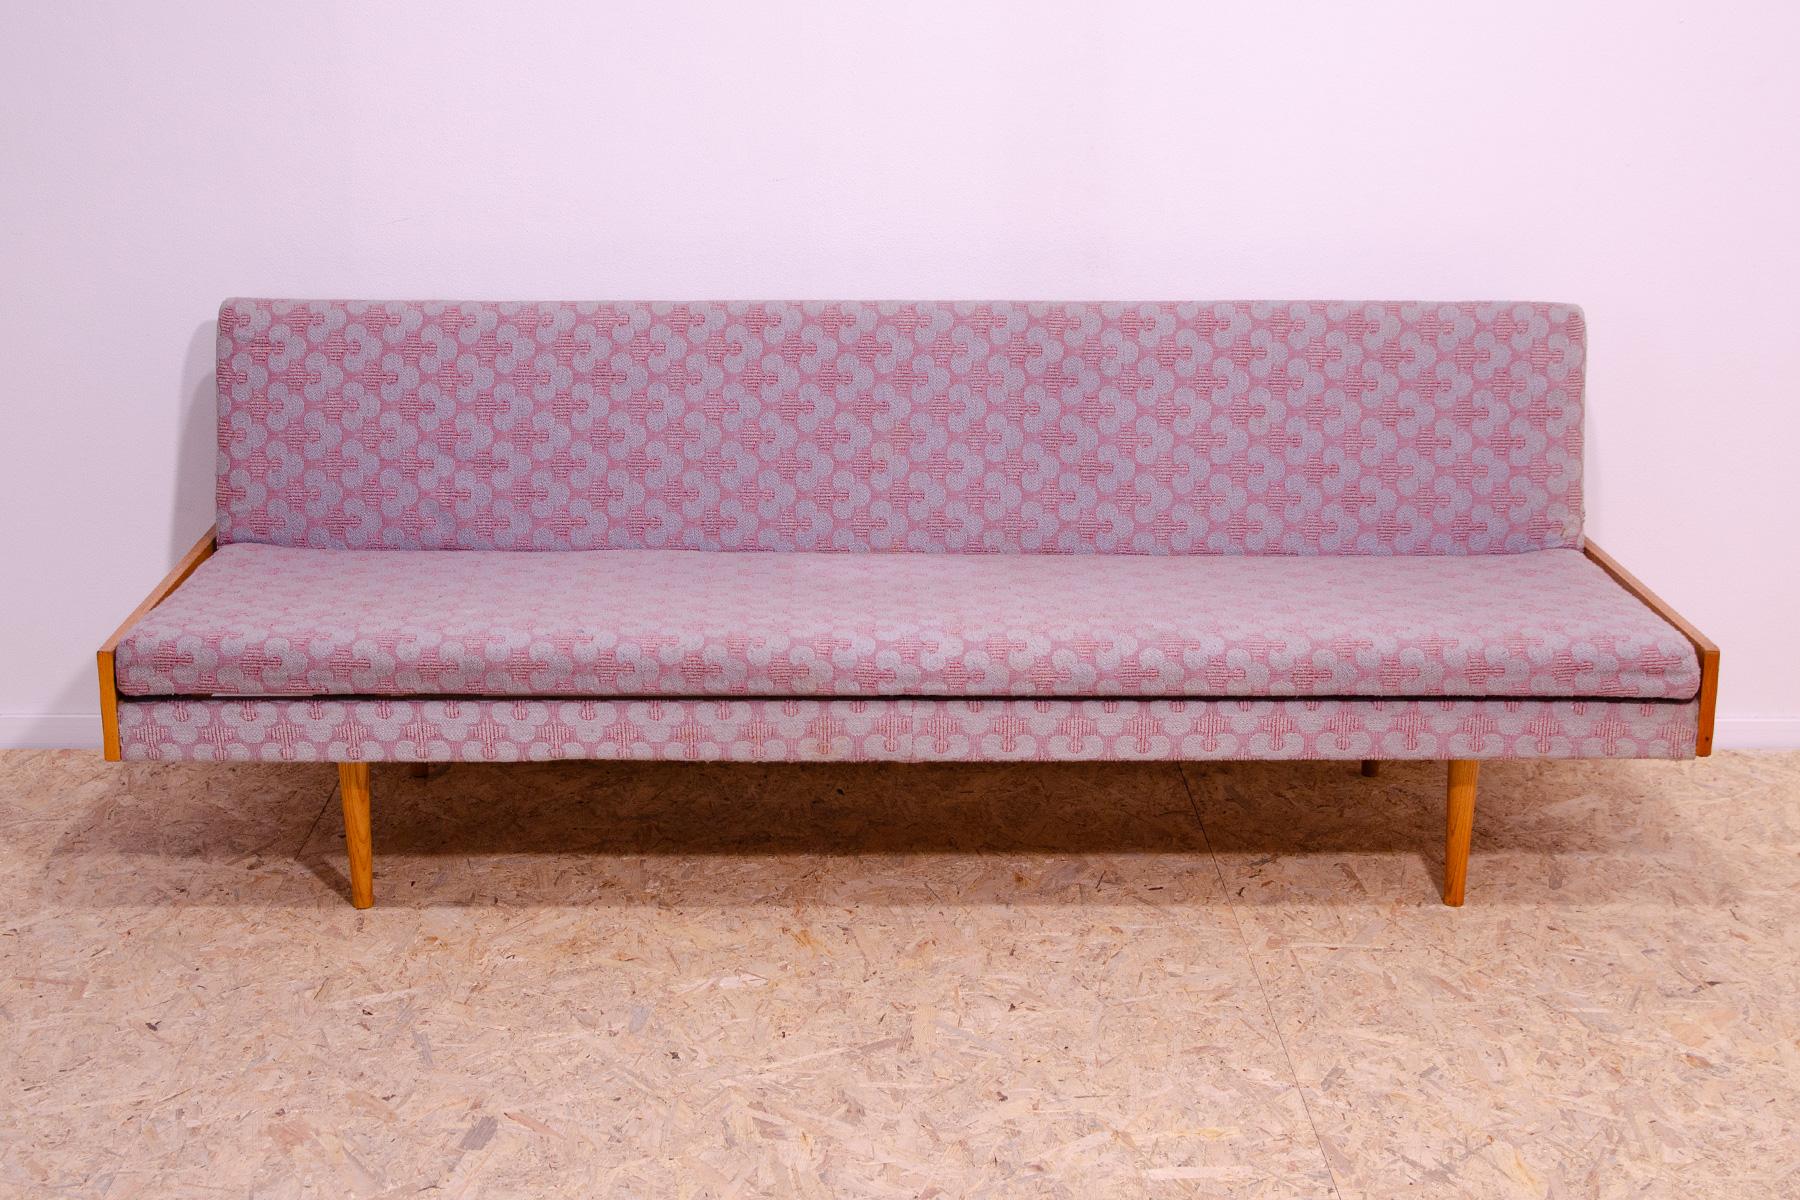 Ce canapé/sofabed du milieu du siècle, fabriqué dans l'ancienne Tchécoslovaquie dans les années 1960. MATERIAL : bois de Beeche, tissu. Le canapé est en très bon état Vintage, montre des signes d'âge et d'utilisation.

Hauteur : 72 cm

Longueur :